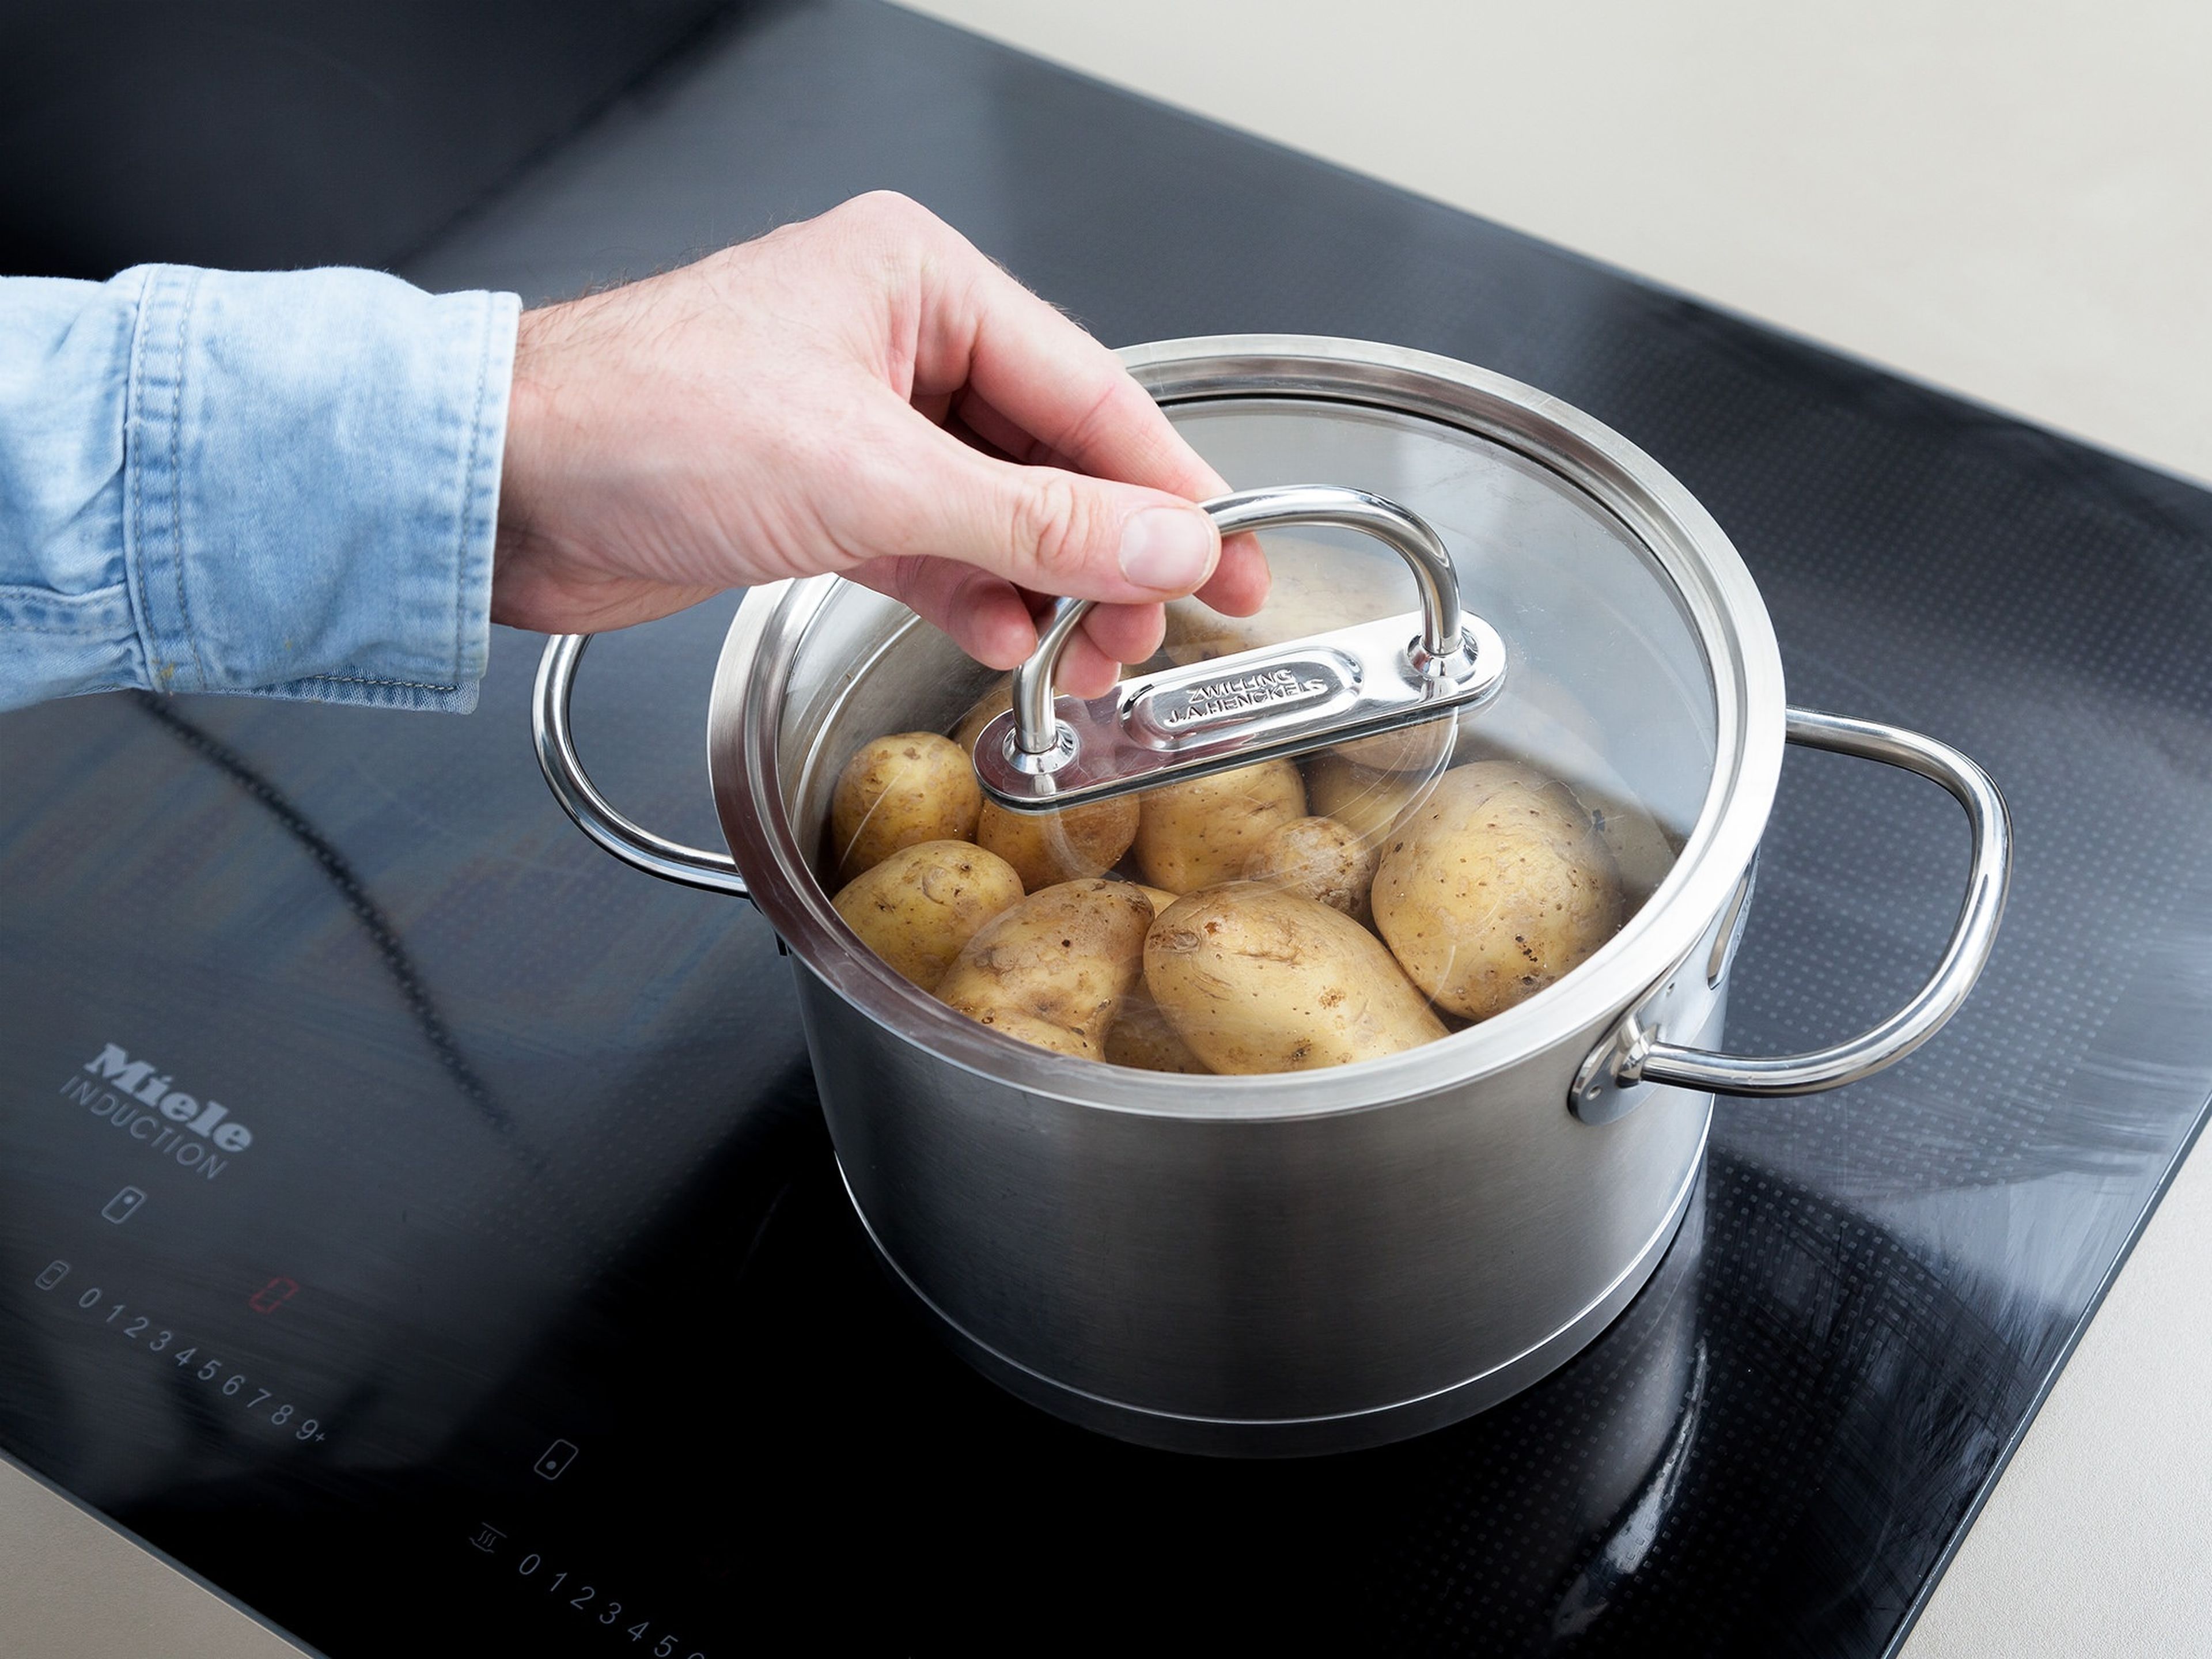 Für unser Kartoffelsalat Rezept zuerst Kartoffeln unter klarem Wasser abspülen und in einen großen Topf mit Wasser geben. Großzügig salzen und die Kartoffeln über mittlerer Hitze ca. 20 Min. köcheln. Anschließend abgießen und abkühlen lassen.